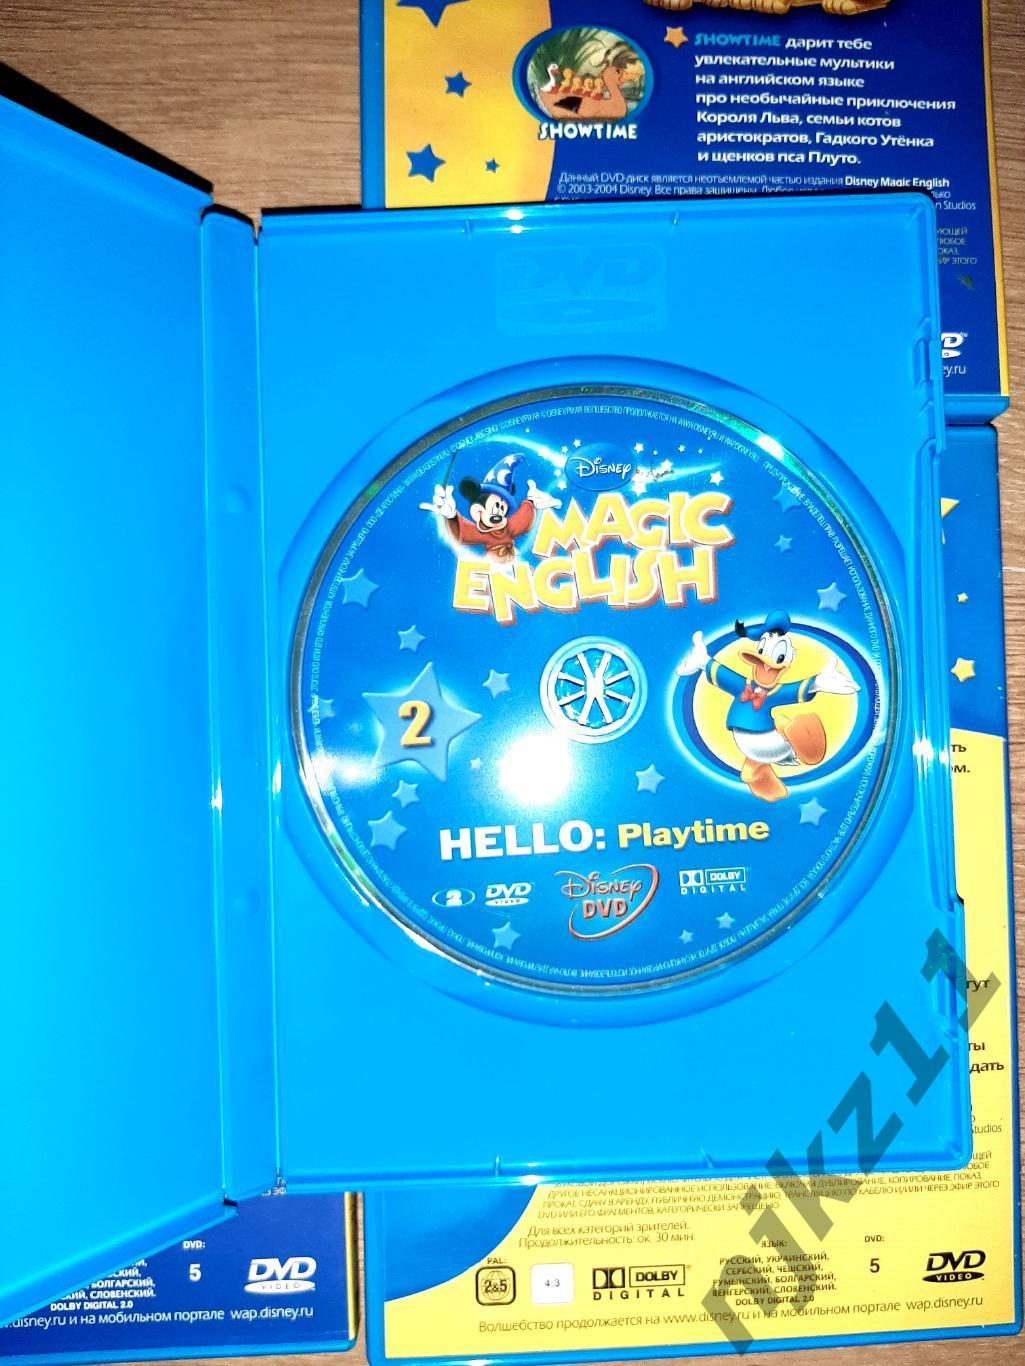 Disney magic english DVD 4 диска для интерактивного обучения 3